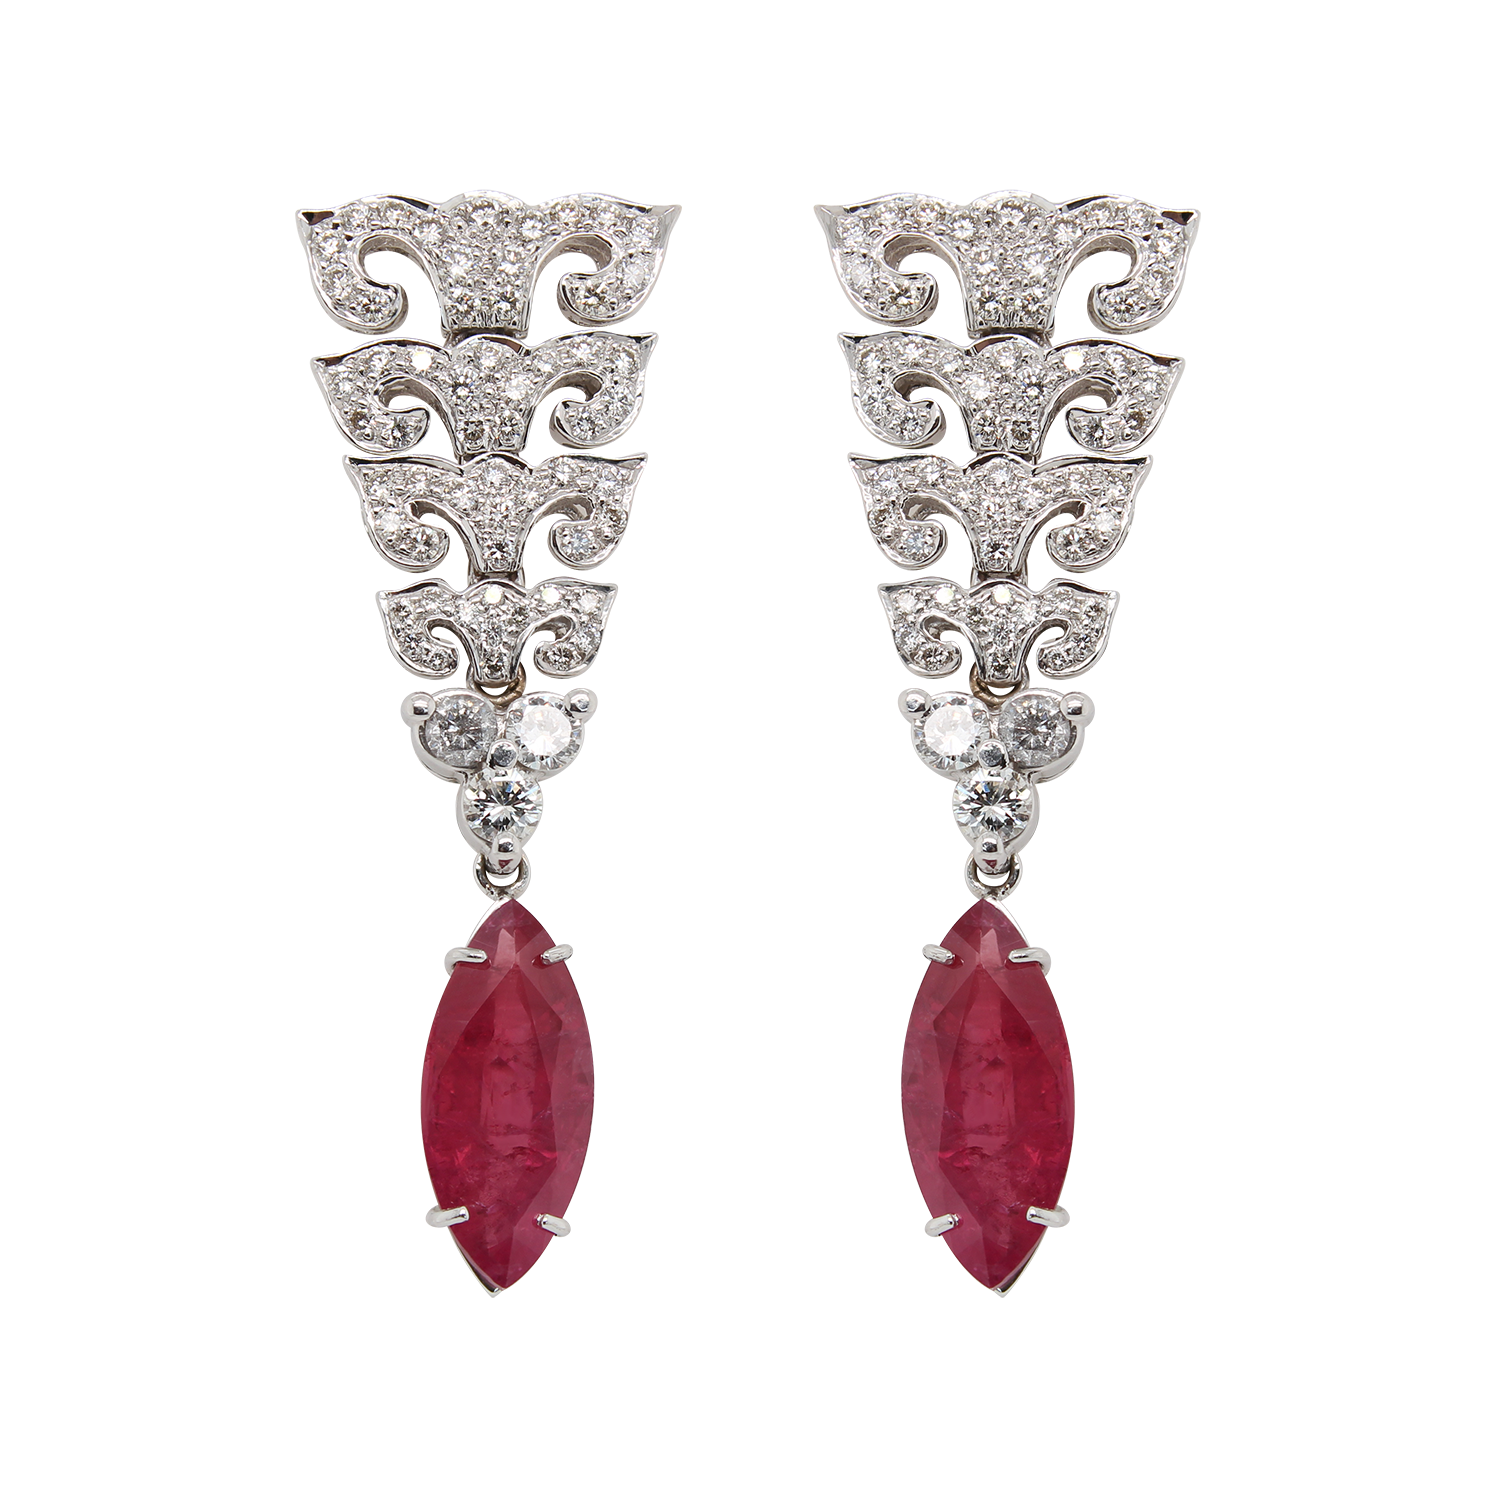 RUBY EARRINGS, SILVER 925. Jewellery & Gemstones - Earrings - Auctionet